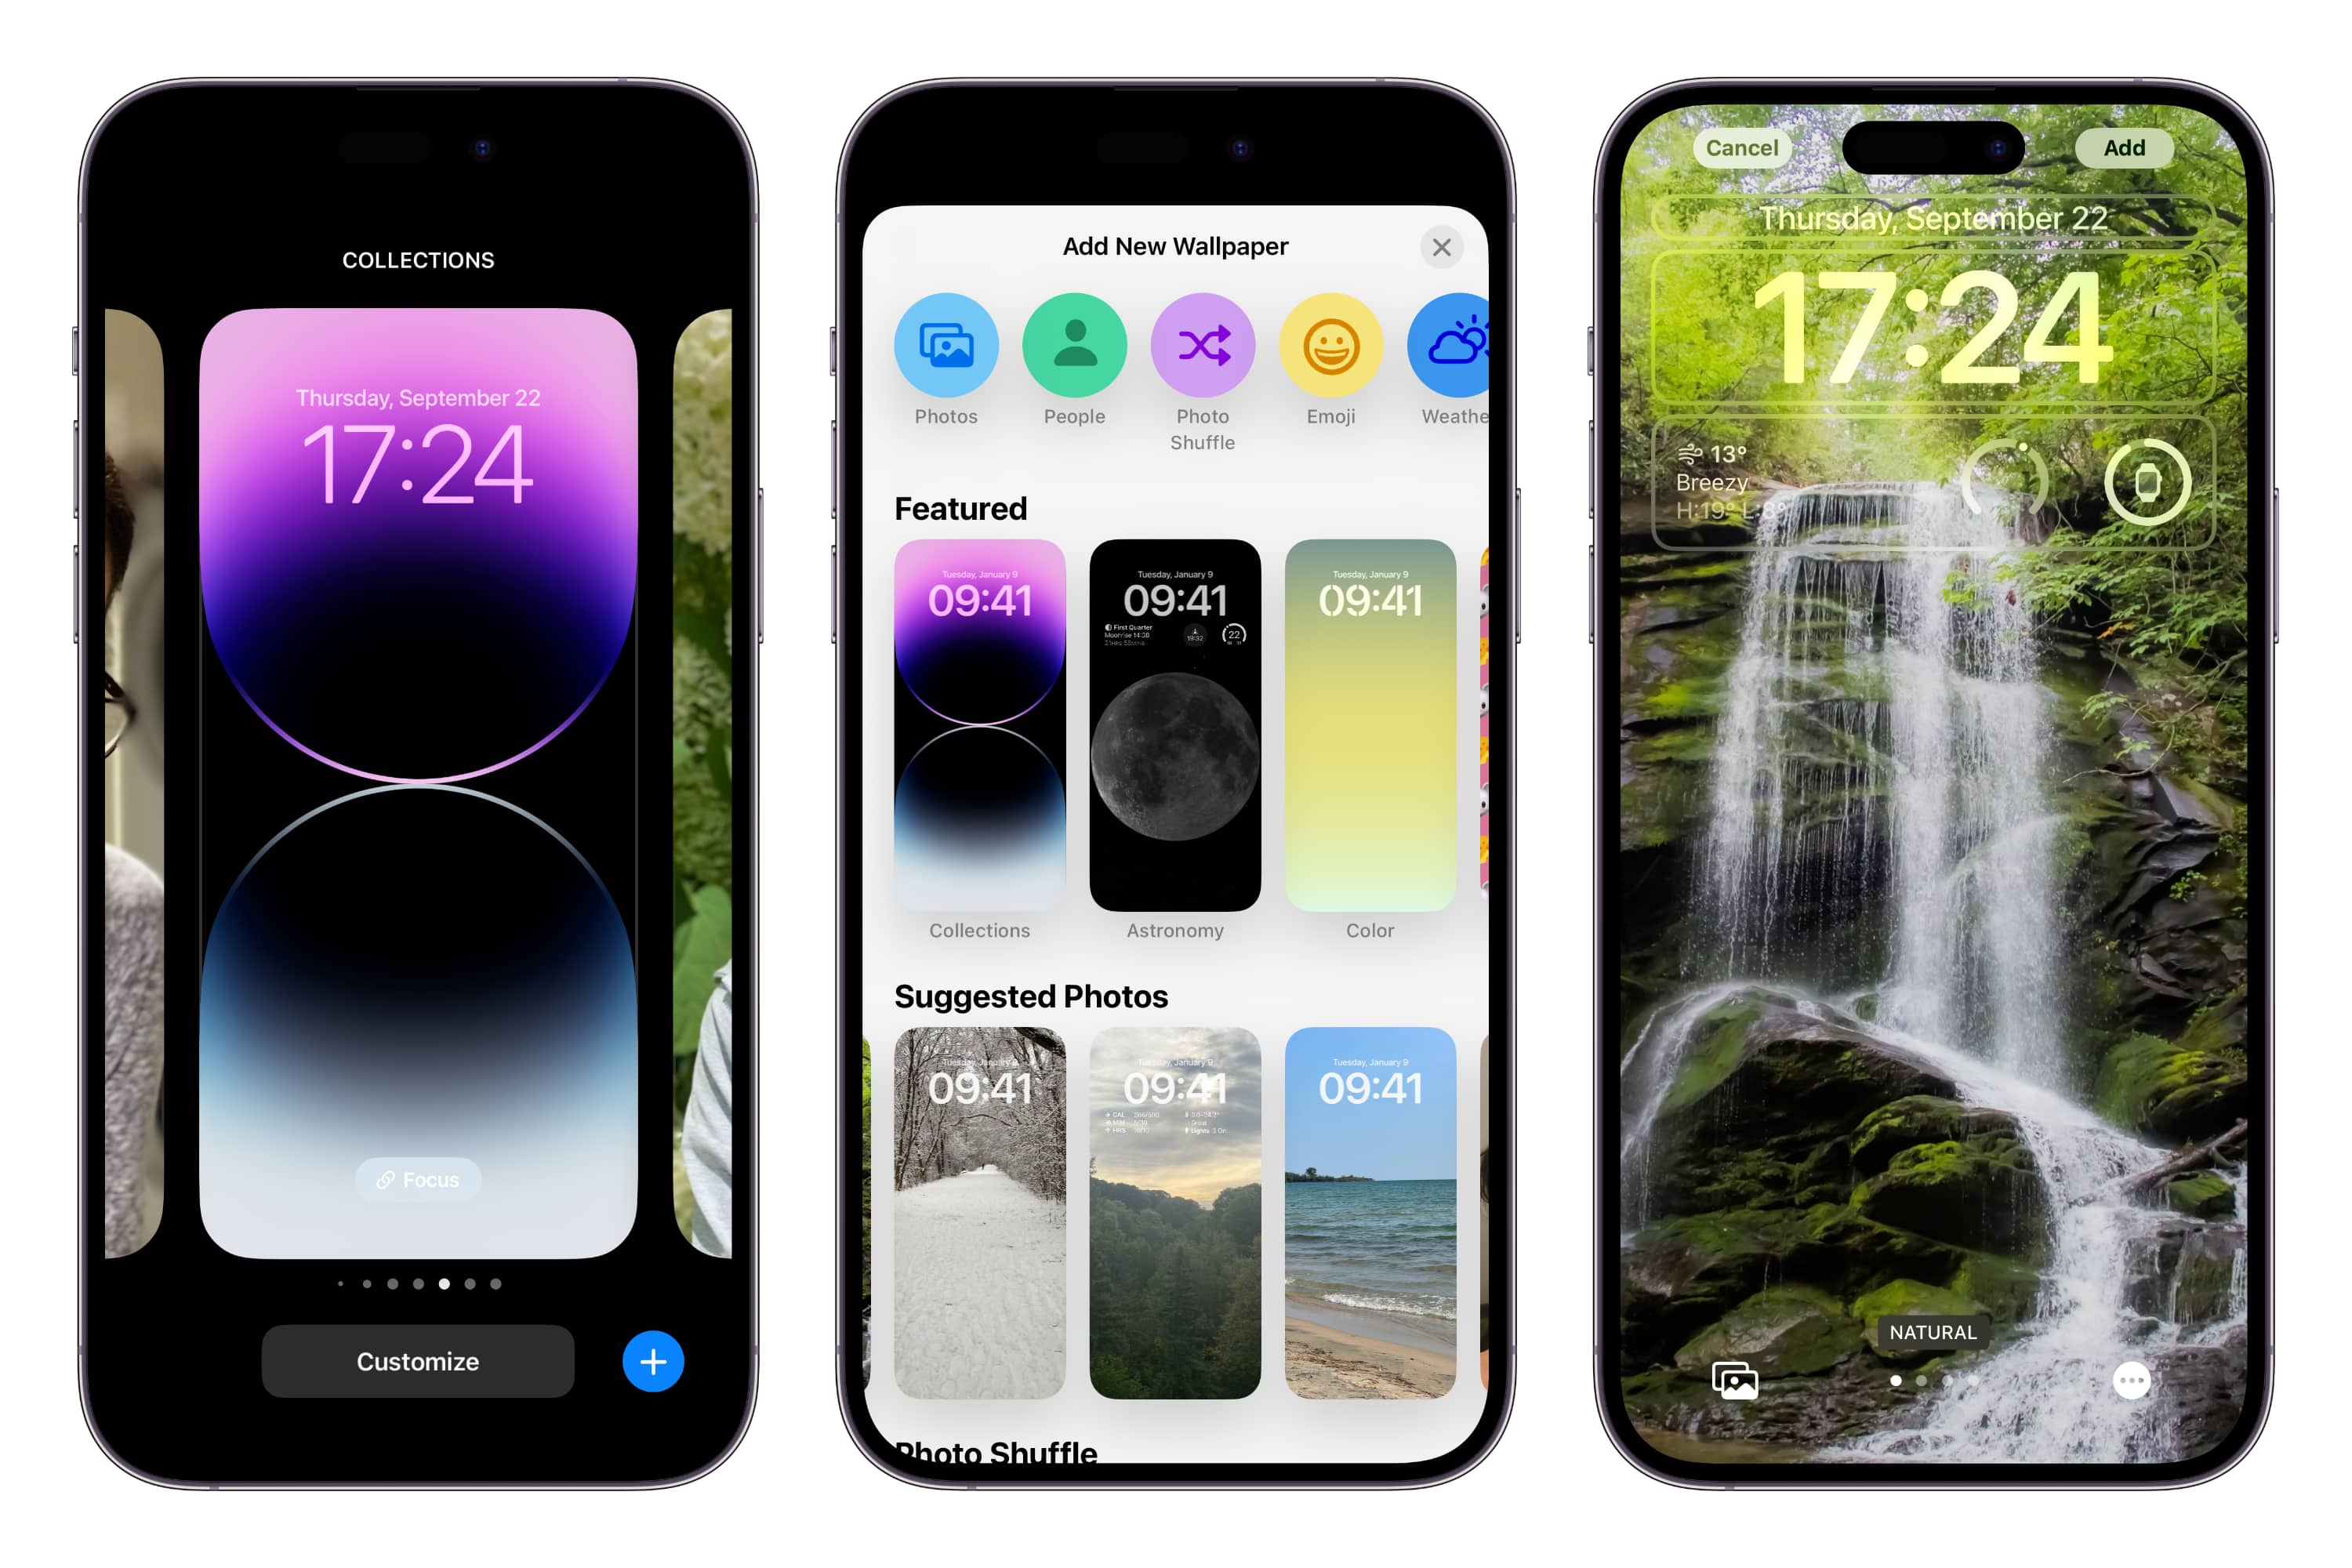 Đặt ảnh nền màn hình chính khác nhau trên iOS 16 | Công nghệ số ...: Tự tạo phong cách riêng cho màn hình khóa và màn hình chính của iOS 16 bằng cách đặt các ảnh nền khác nhau. Tự do sáng tạo và thể hiện bản thân với rất nhiều lựa chọn hình ảnh đẹp mắt, từ cảnh thiên nhiên đến những bức tranh sơn mài đẹp mắt. Tìm hiểu ngay cách để đặt ảnh nền màn hình chính khác nhau trên iOS 16!